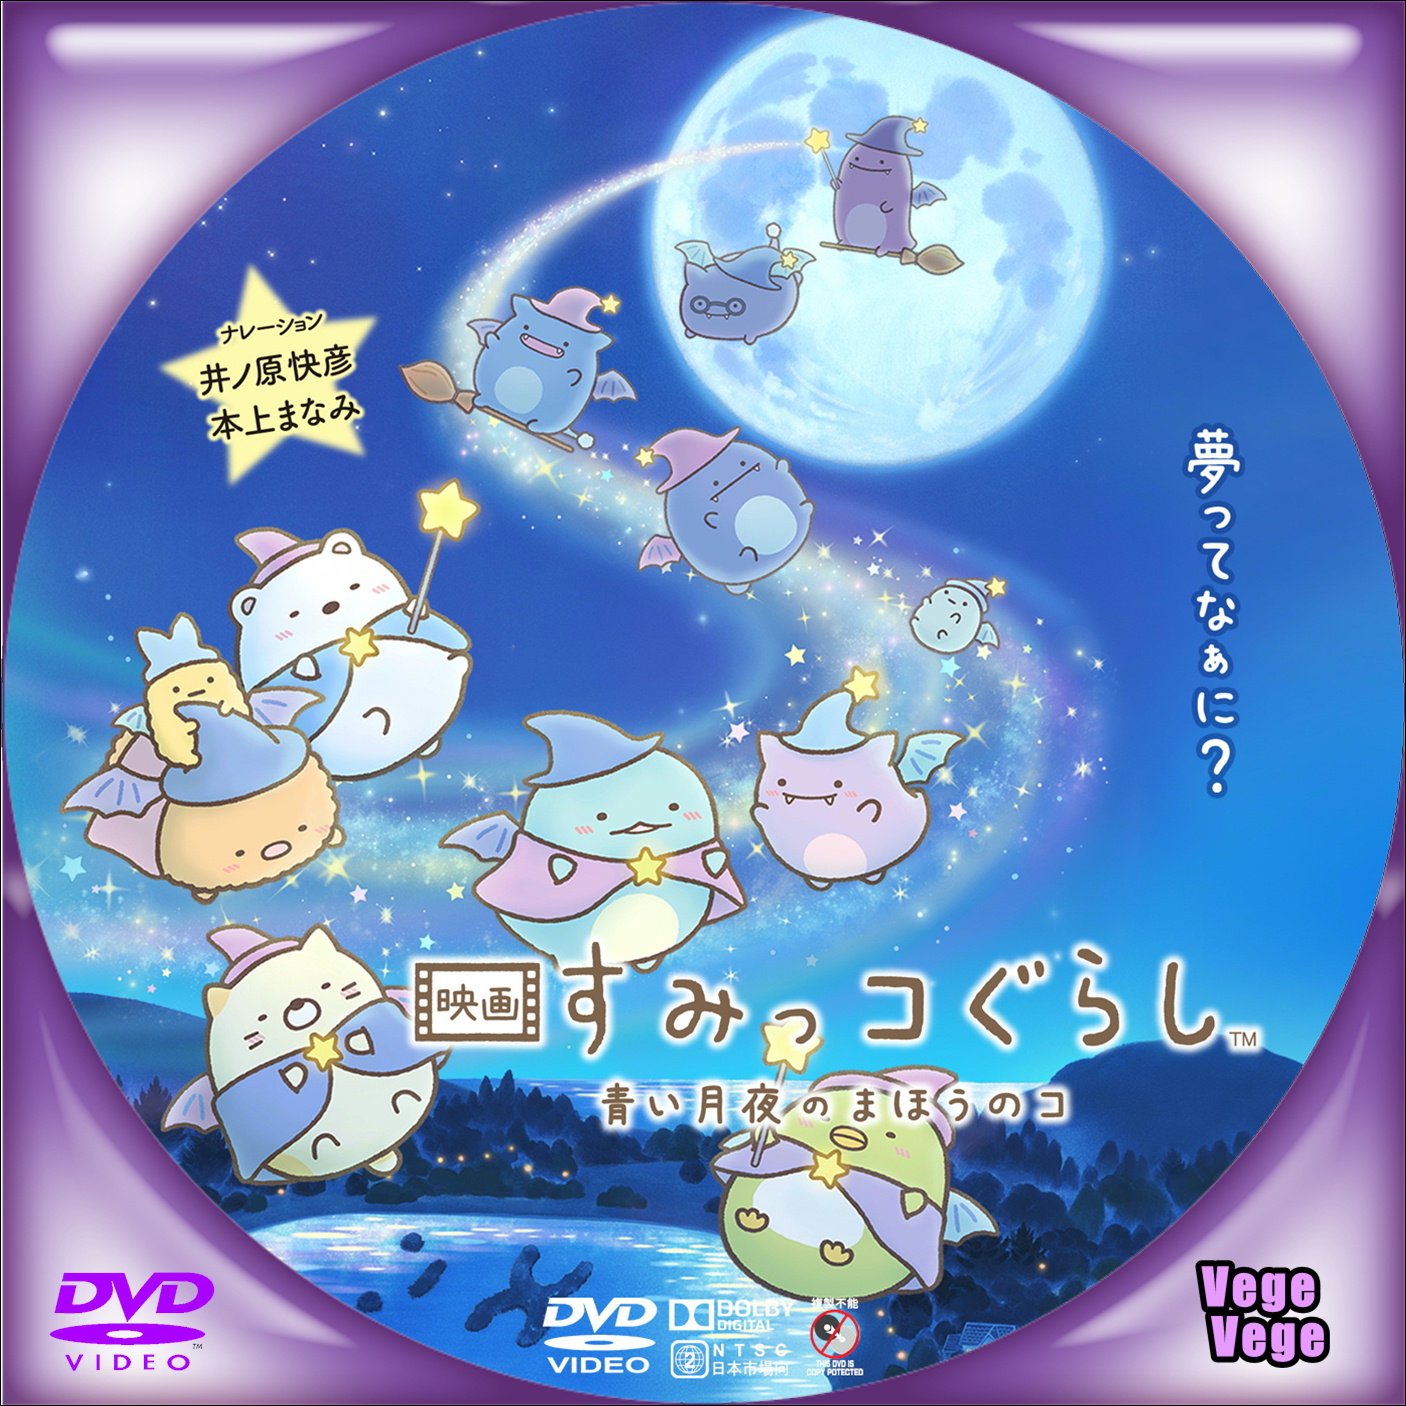 ベジベジ S12-ベジベジの自作BD・DVDラベル 超(スーパー)